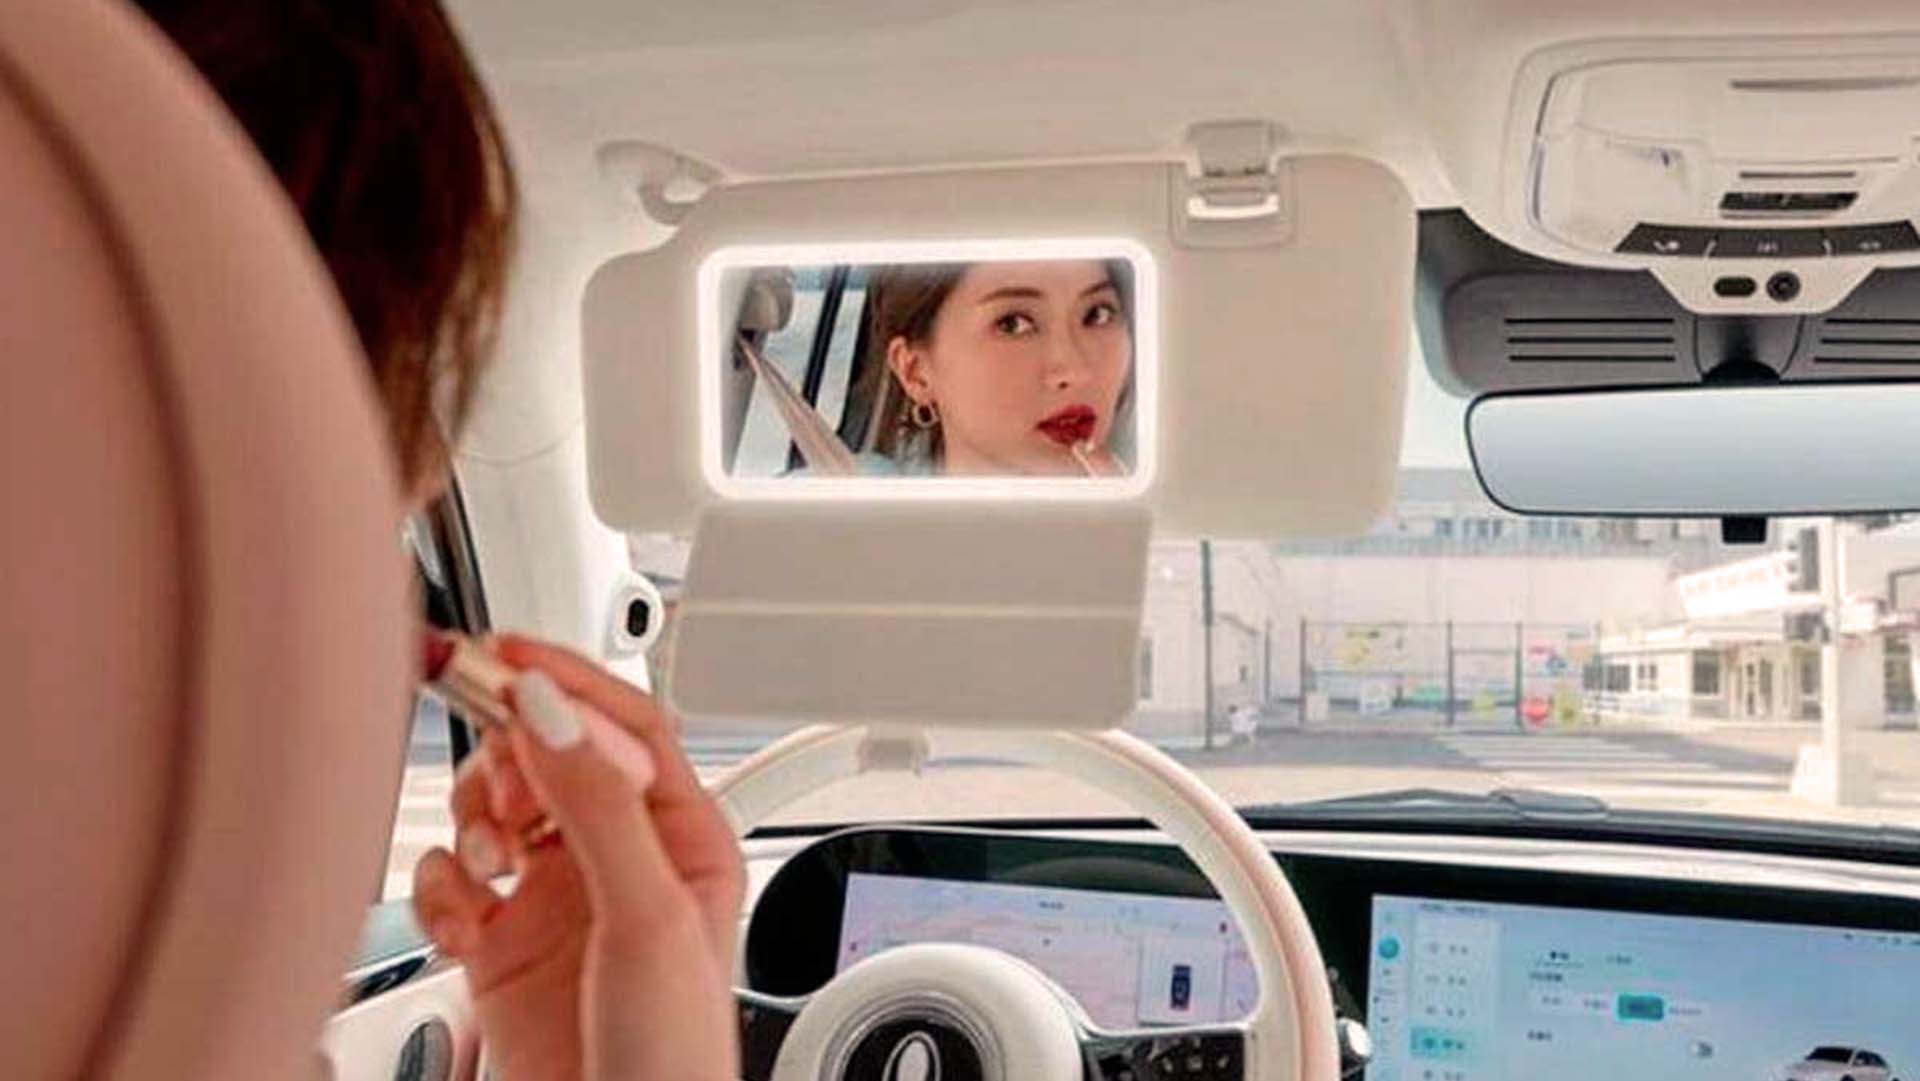 Los fabricantes no solo le han colocado un espacio dedicado a los maquillajes, que no sería tan serio, sino una cámara para hacer selfies mientras conducen